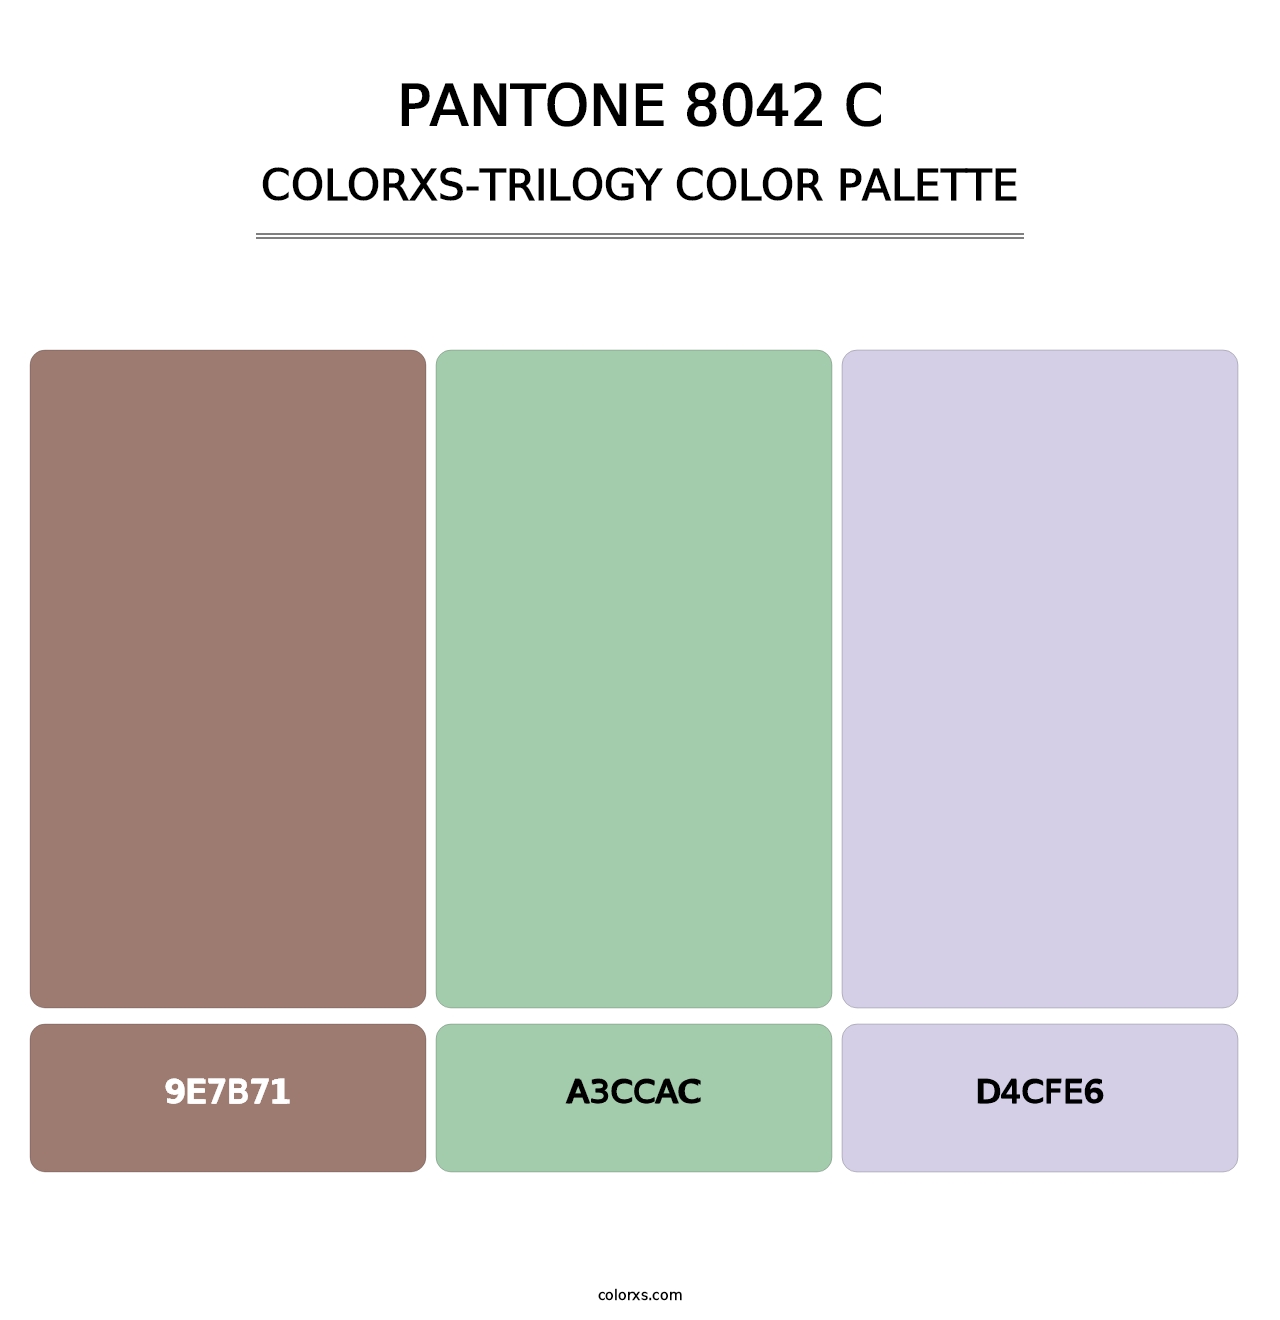 PANTONE 8042 C - Colorxs Trilogy Palette